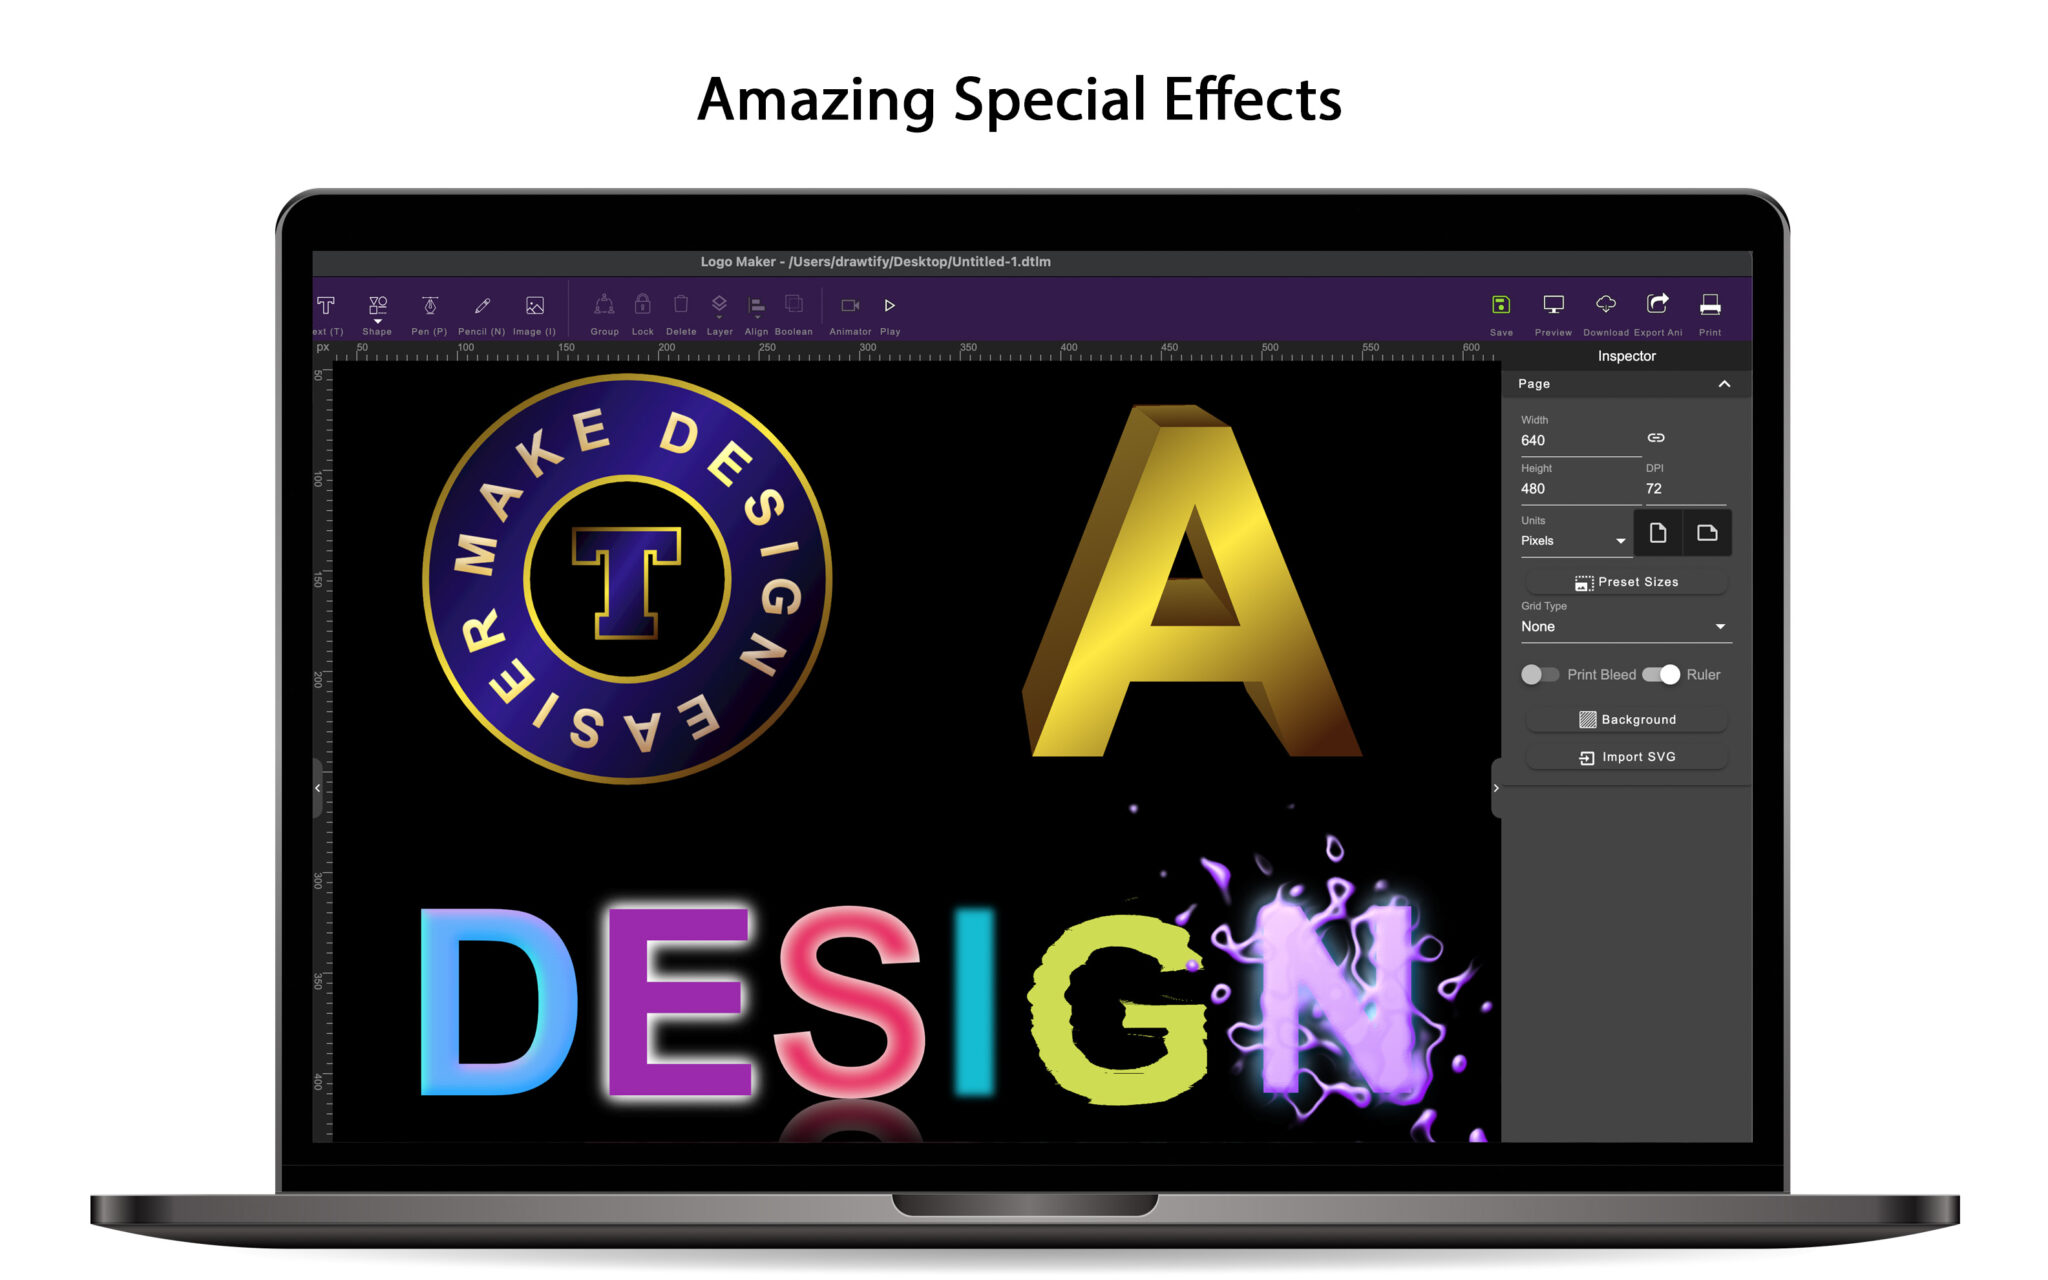 custom animated logo maker